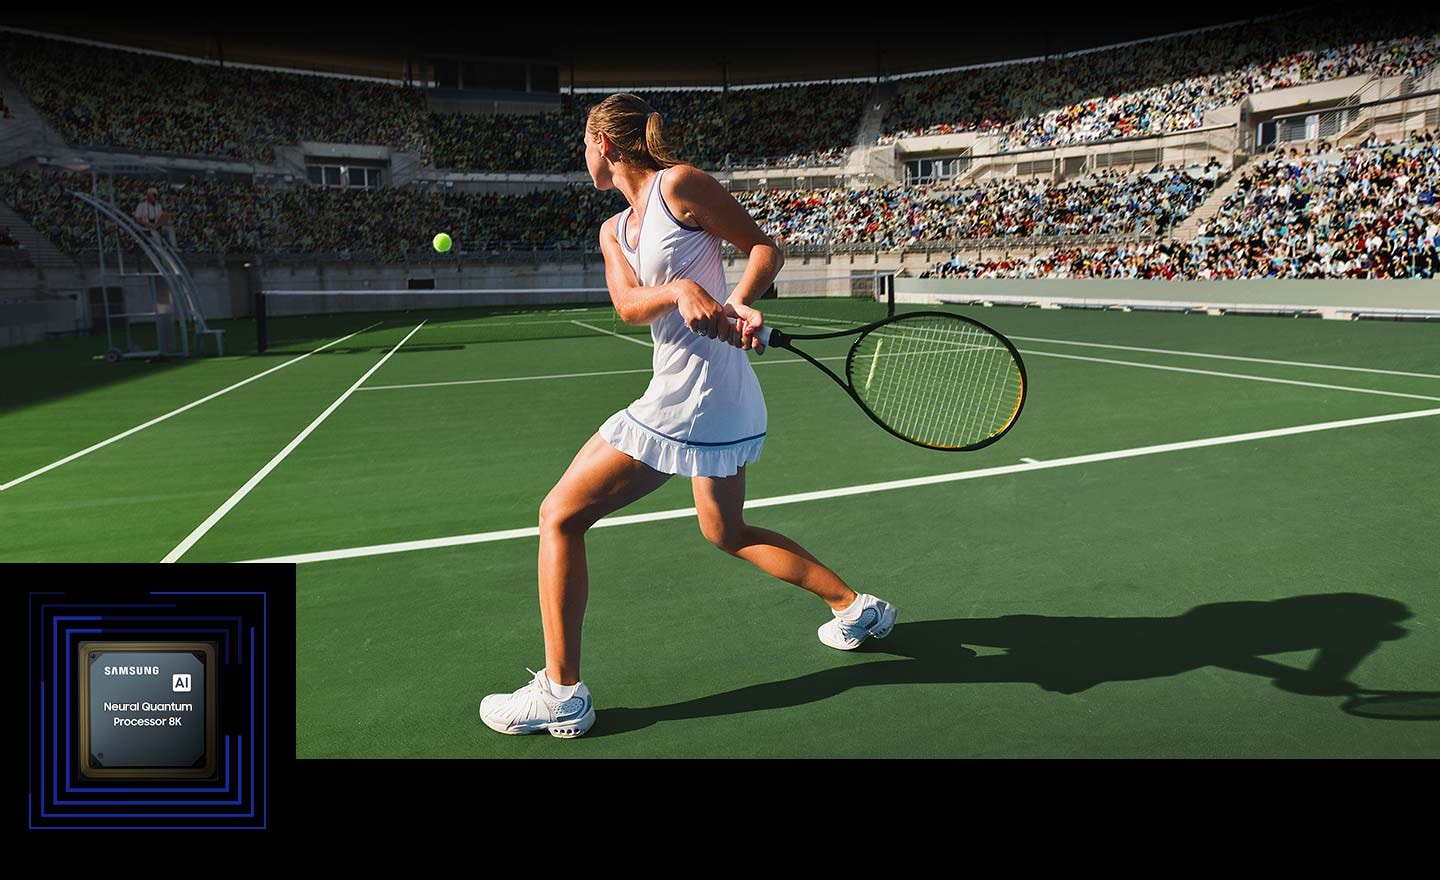 Žena hraje tenis před velkým davem. Neural Quantum Processor 8K zpracovává mnoho objektů na displeji a vylepšuje celou scénu. Neural Quantum Processor 8K je zobrazen v levém dolním rohu.